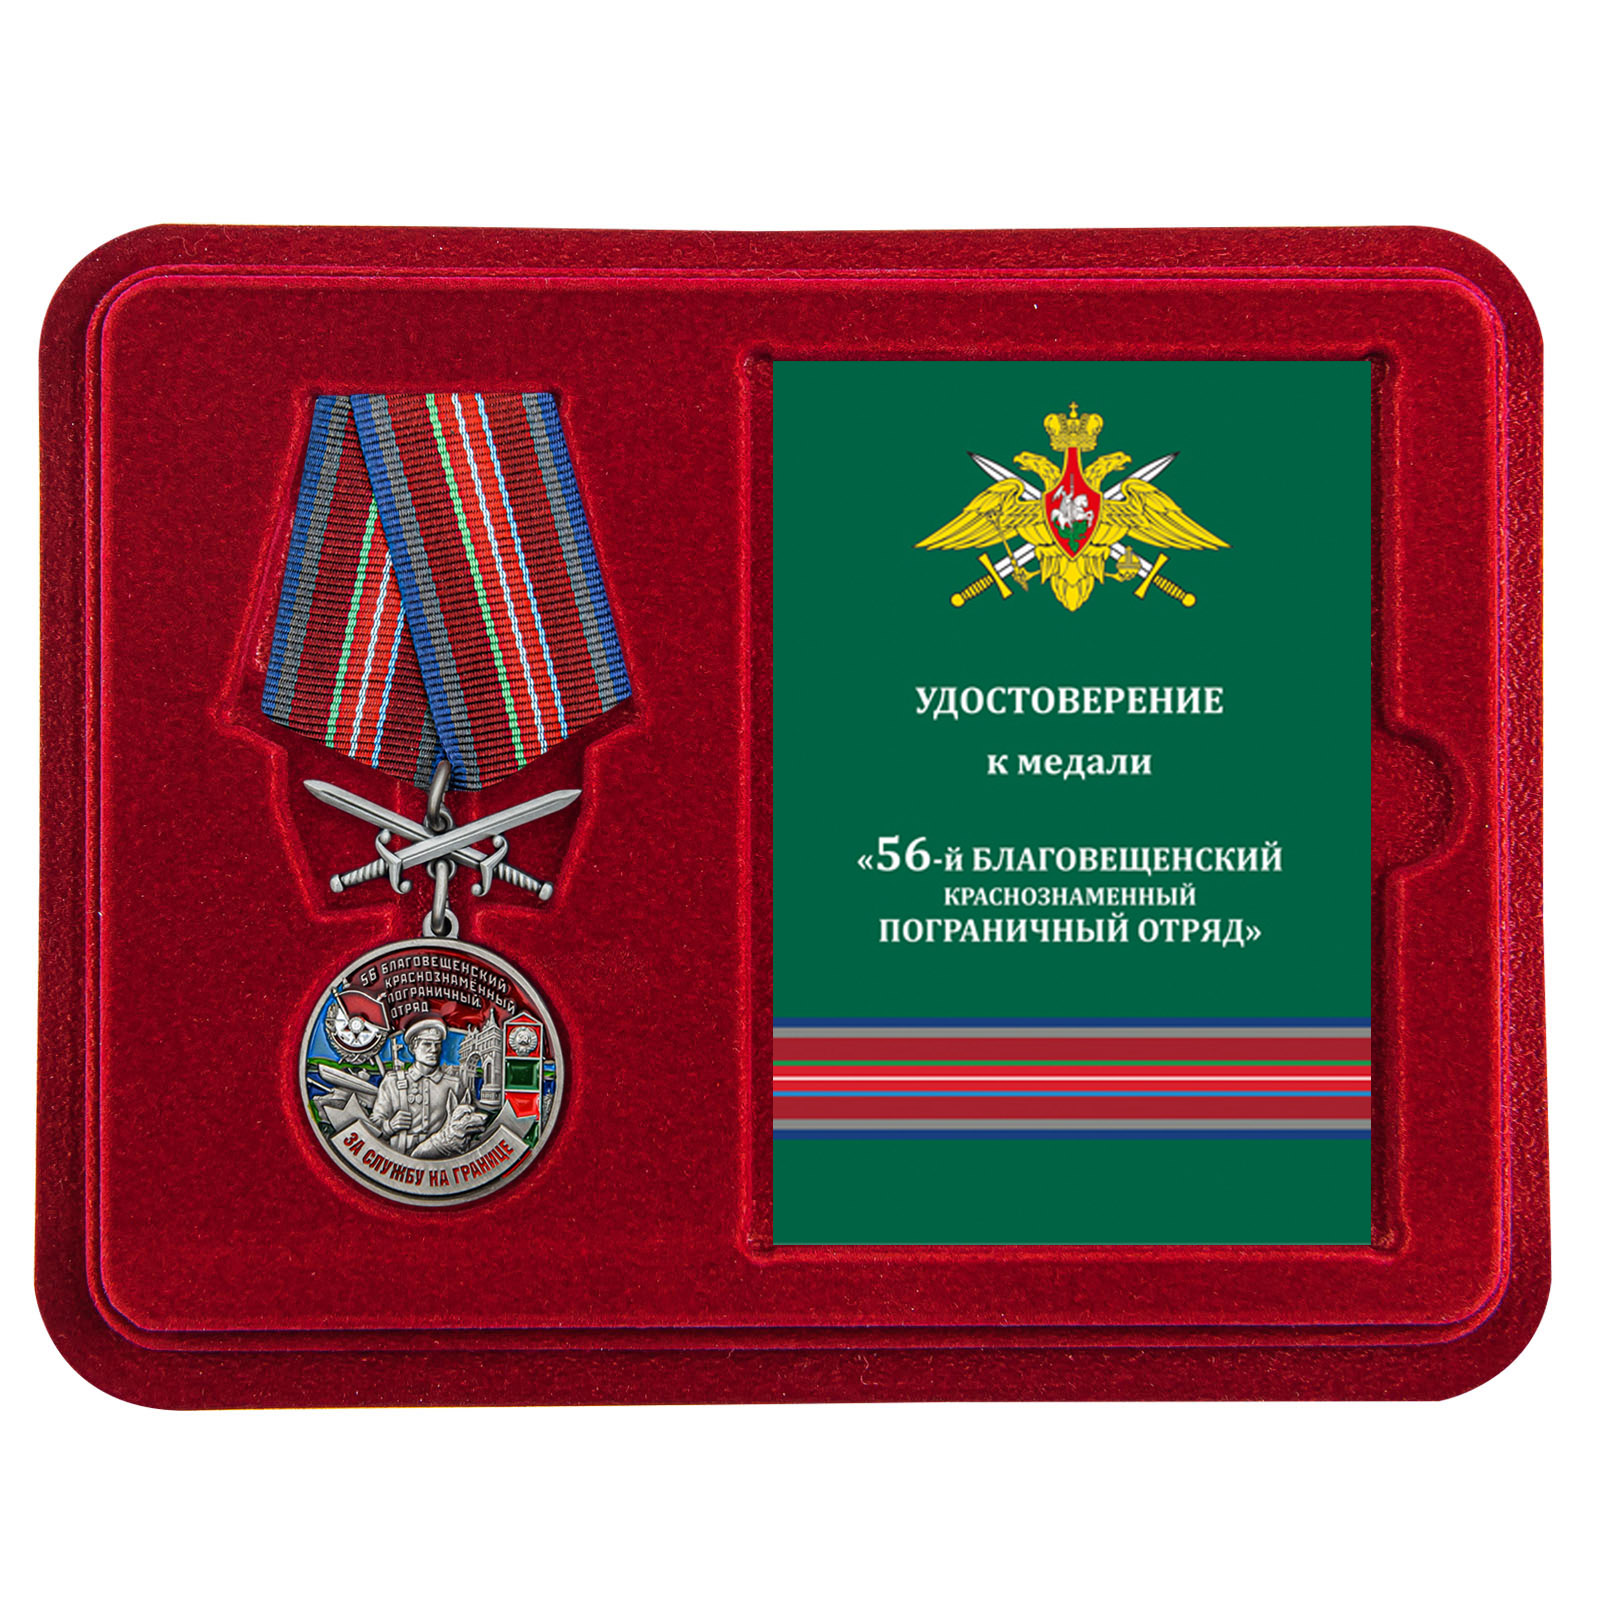 Купить медаль За службу в Благовещенском пограничном отряде выгодно